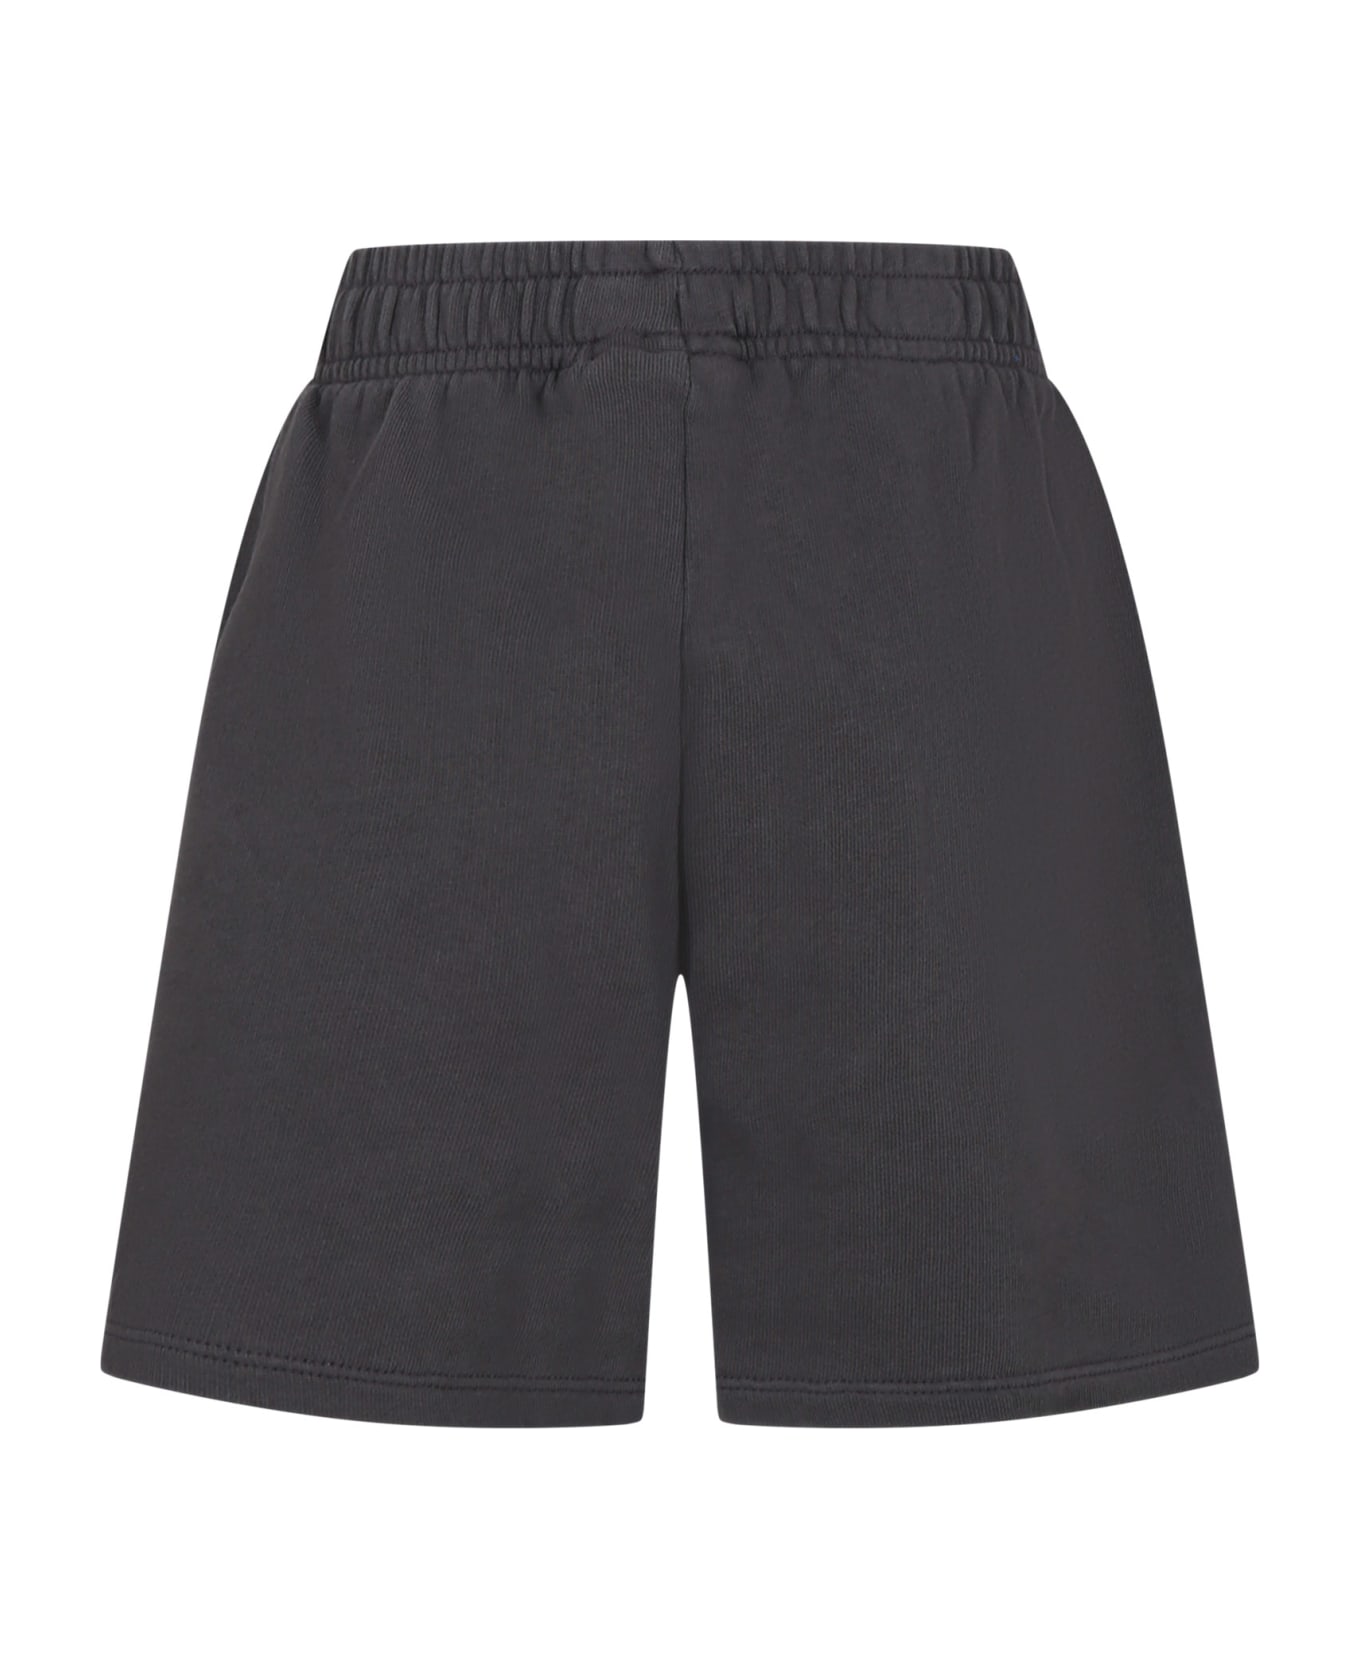 Mini Rodini Gray Sports Shorts For Boy - Grey ボトムス